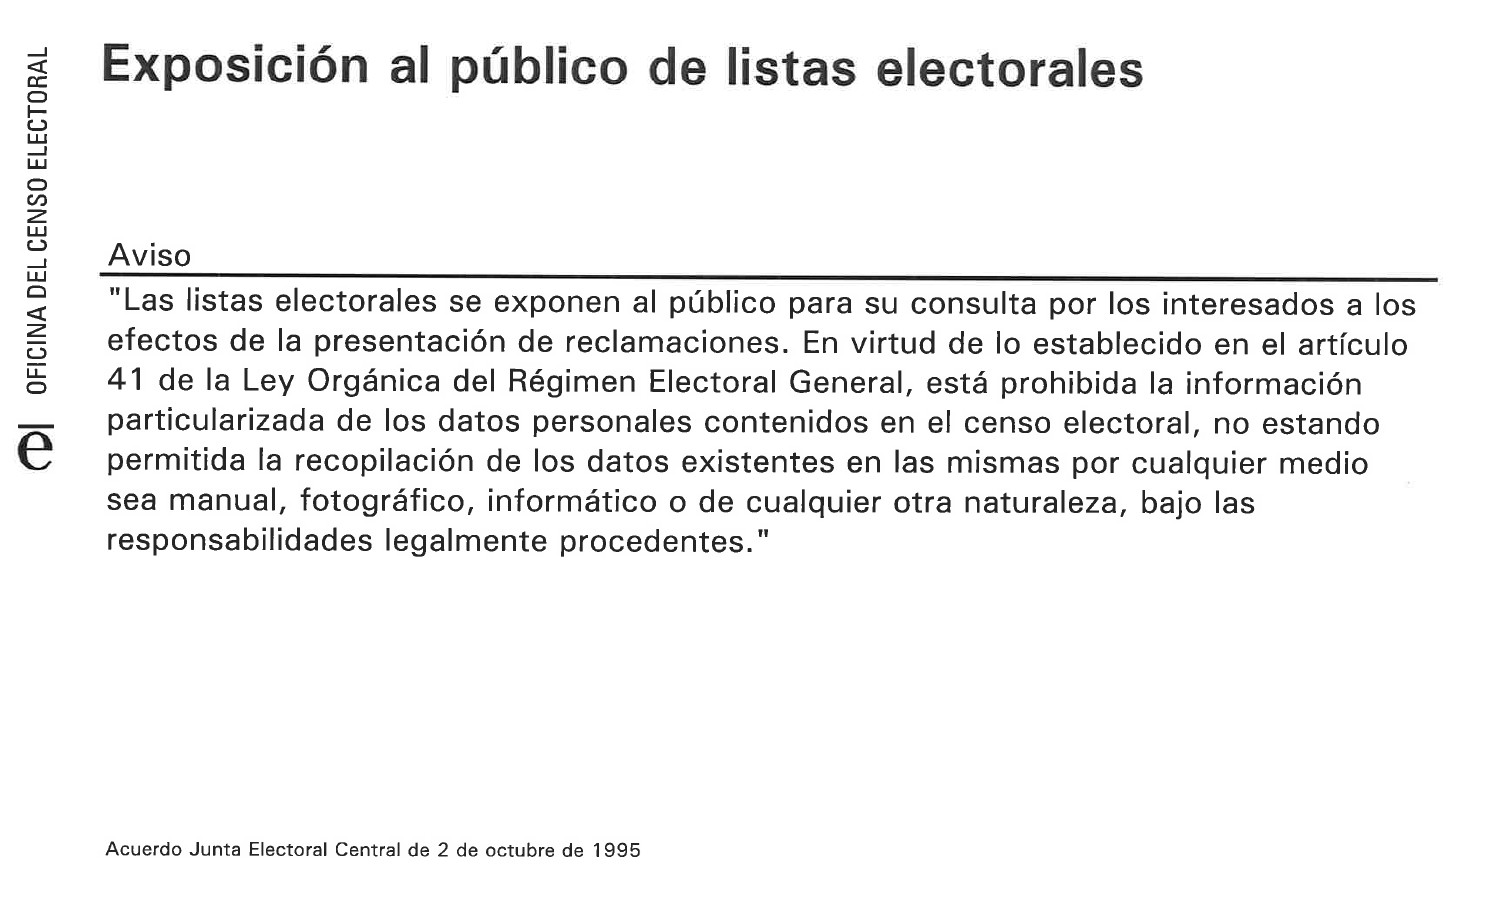 (Español) Exposición al público de listas electorales